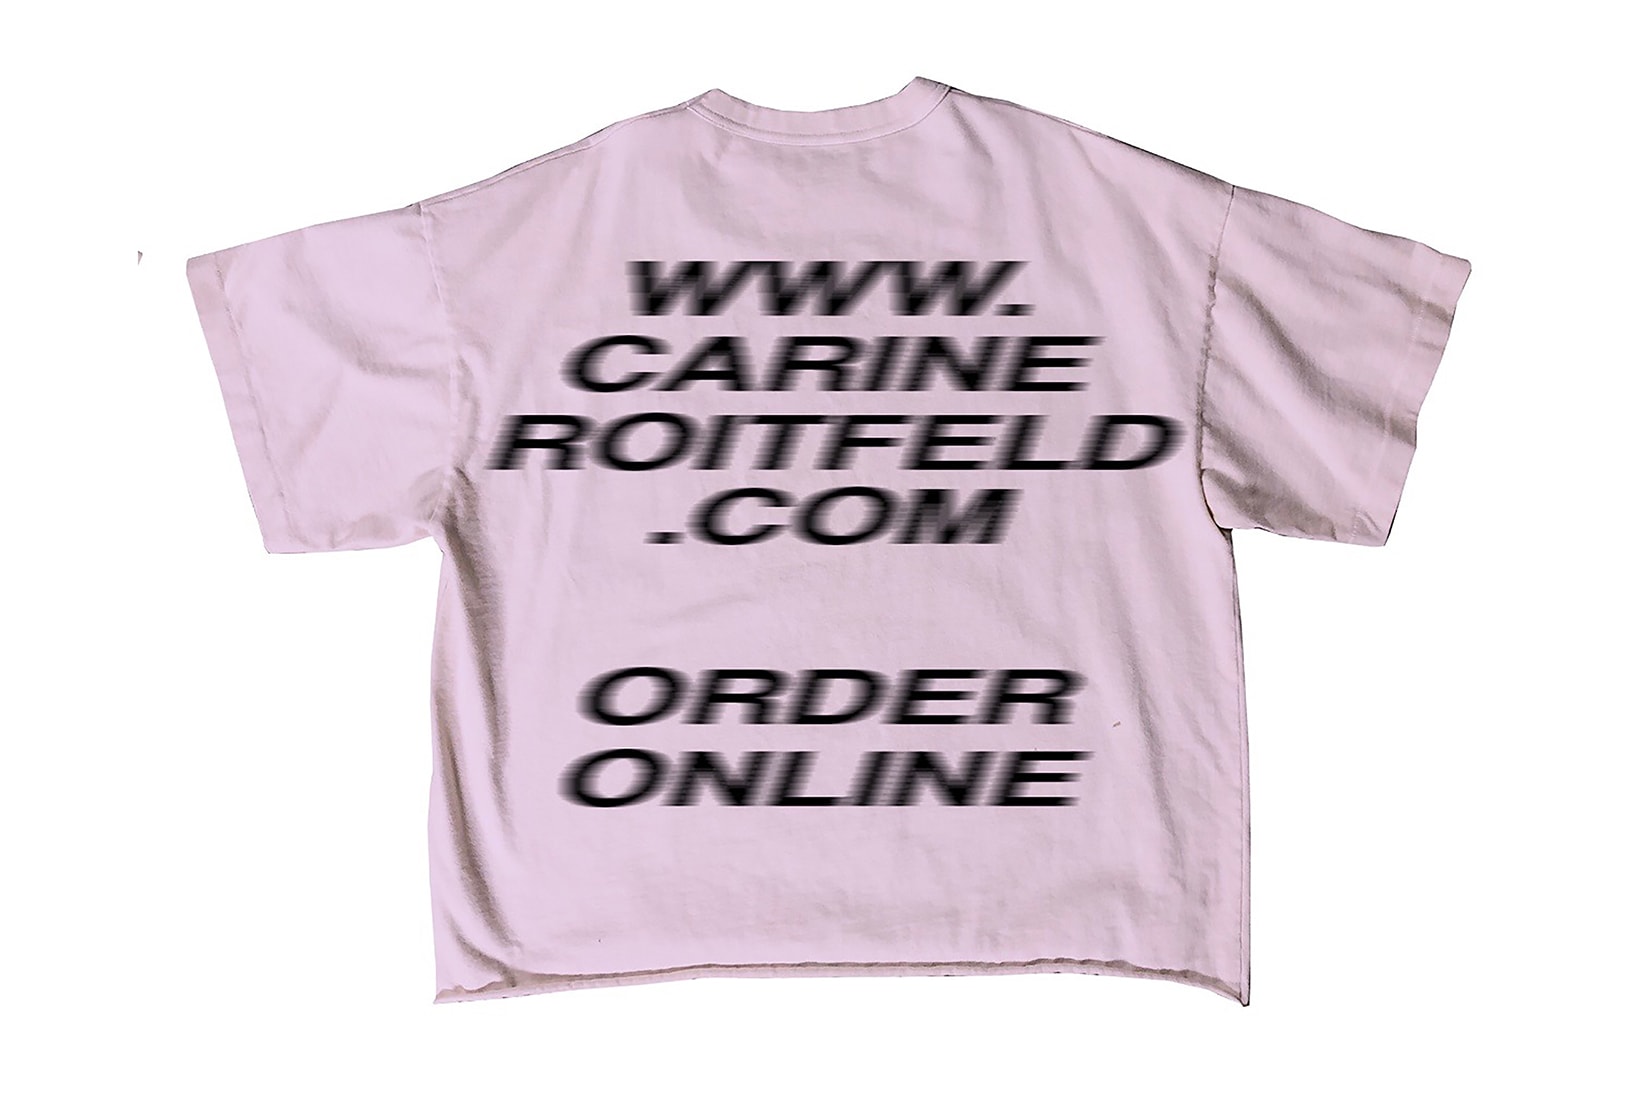 Free YEEZY Season 7 T-shirt Kanye West Carine Roitfeld Signed Pop-Up Store NYC